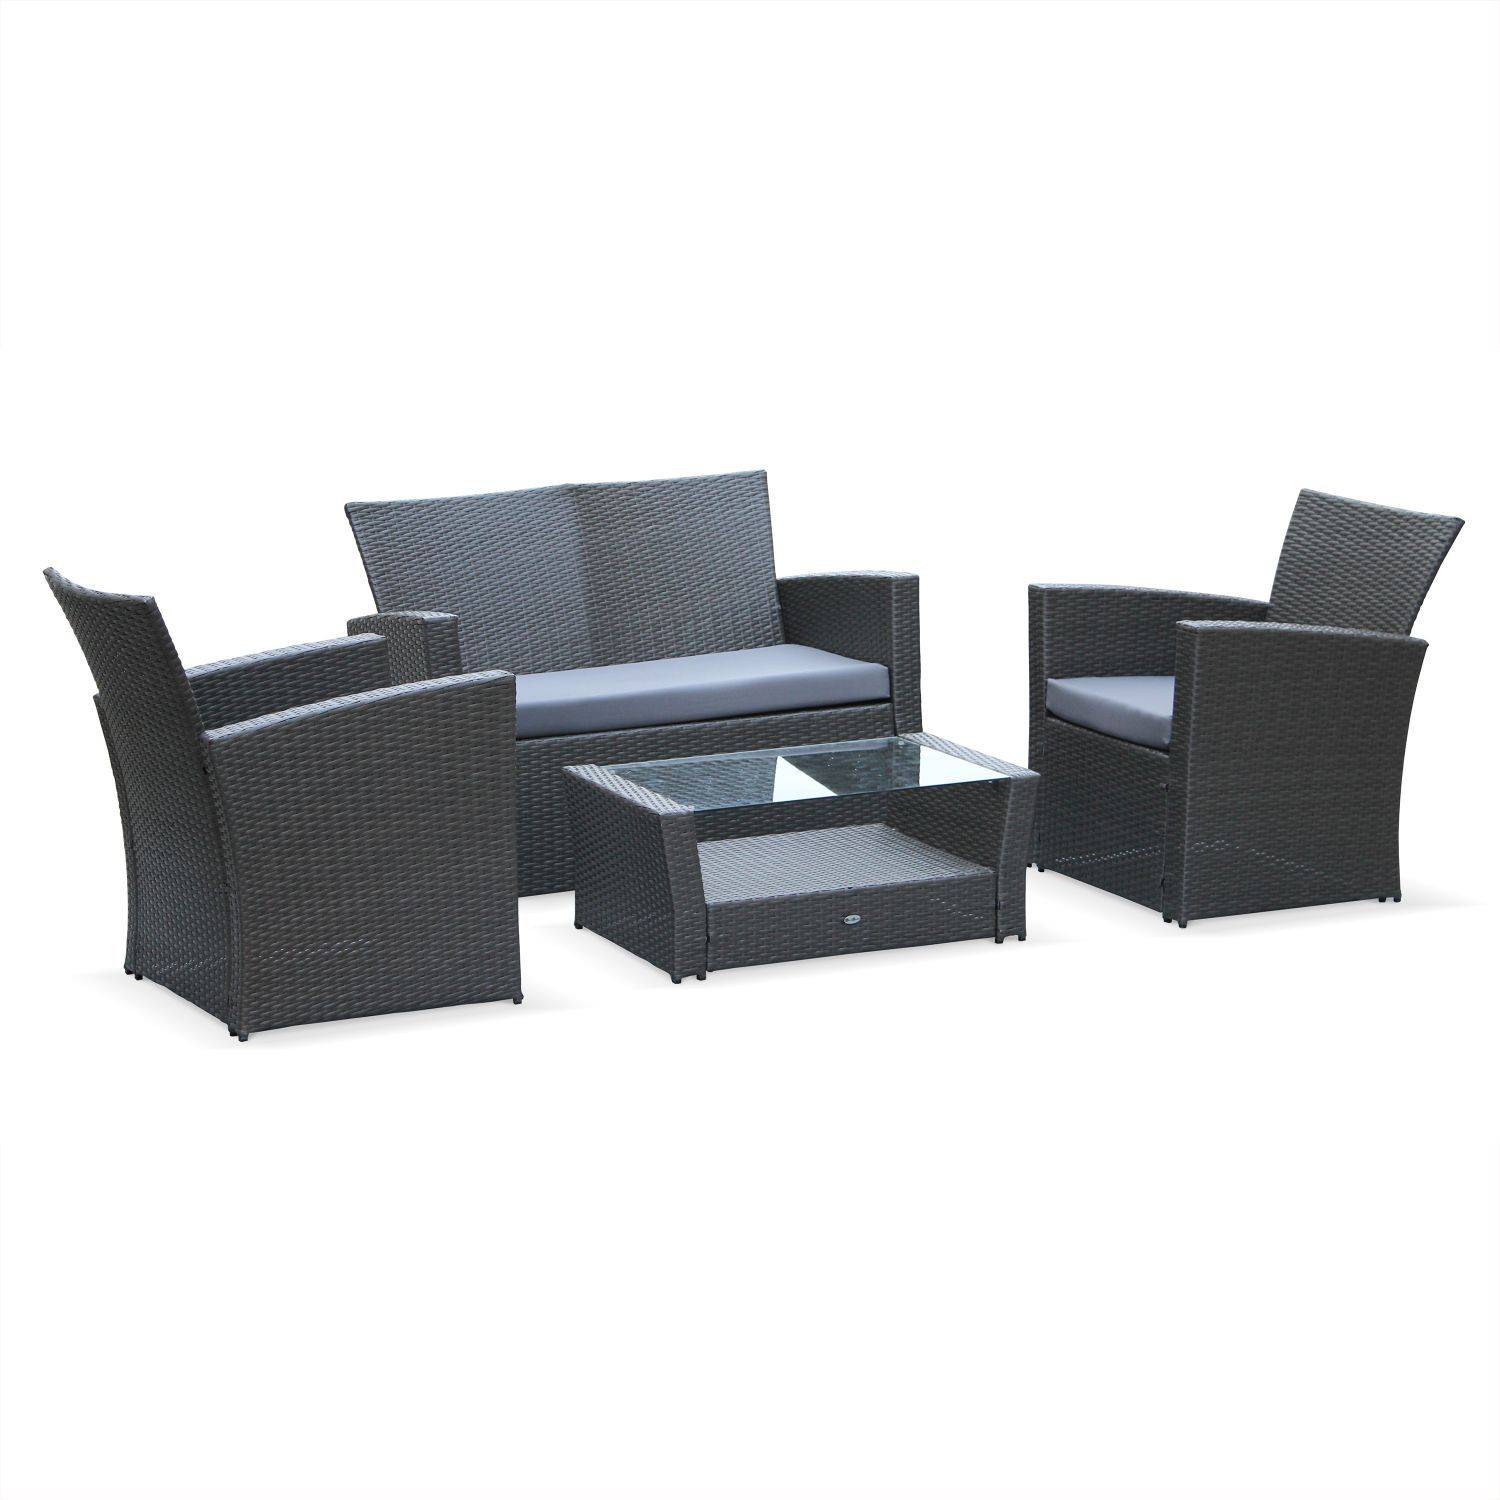 Asti -  set van 1 sofa, 2 fauteuils en 1 salontafel van rondgevlochten hars. Photo1